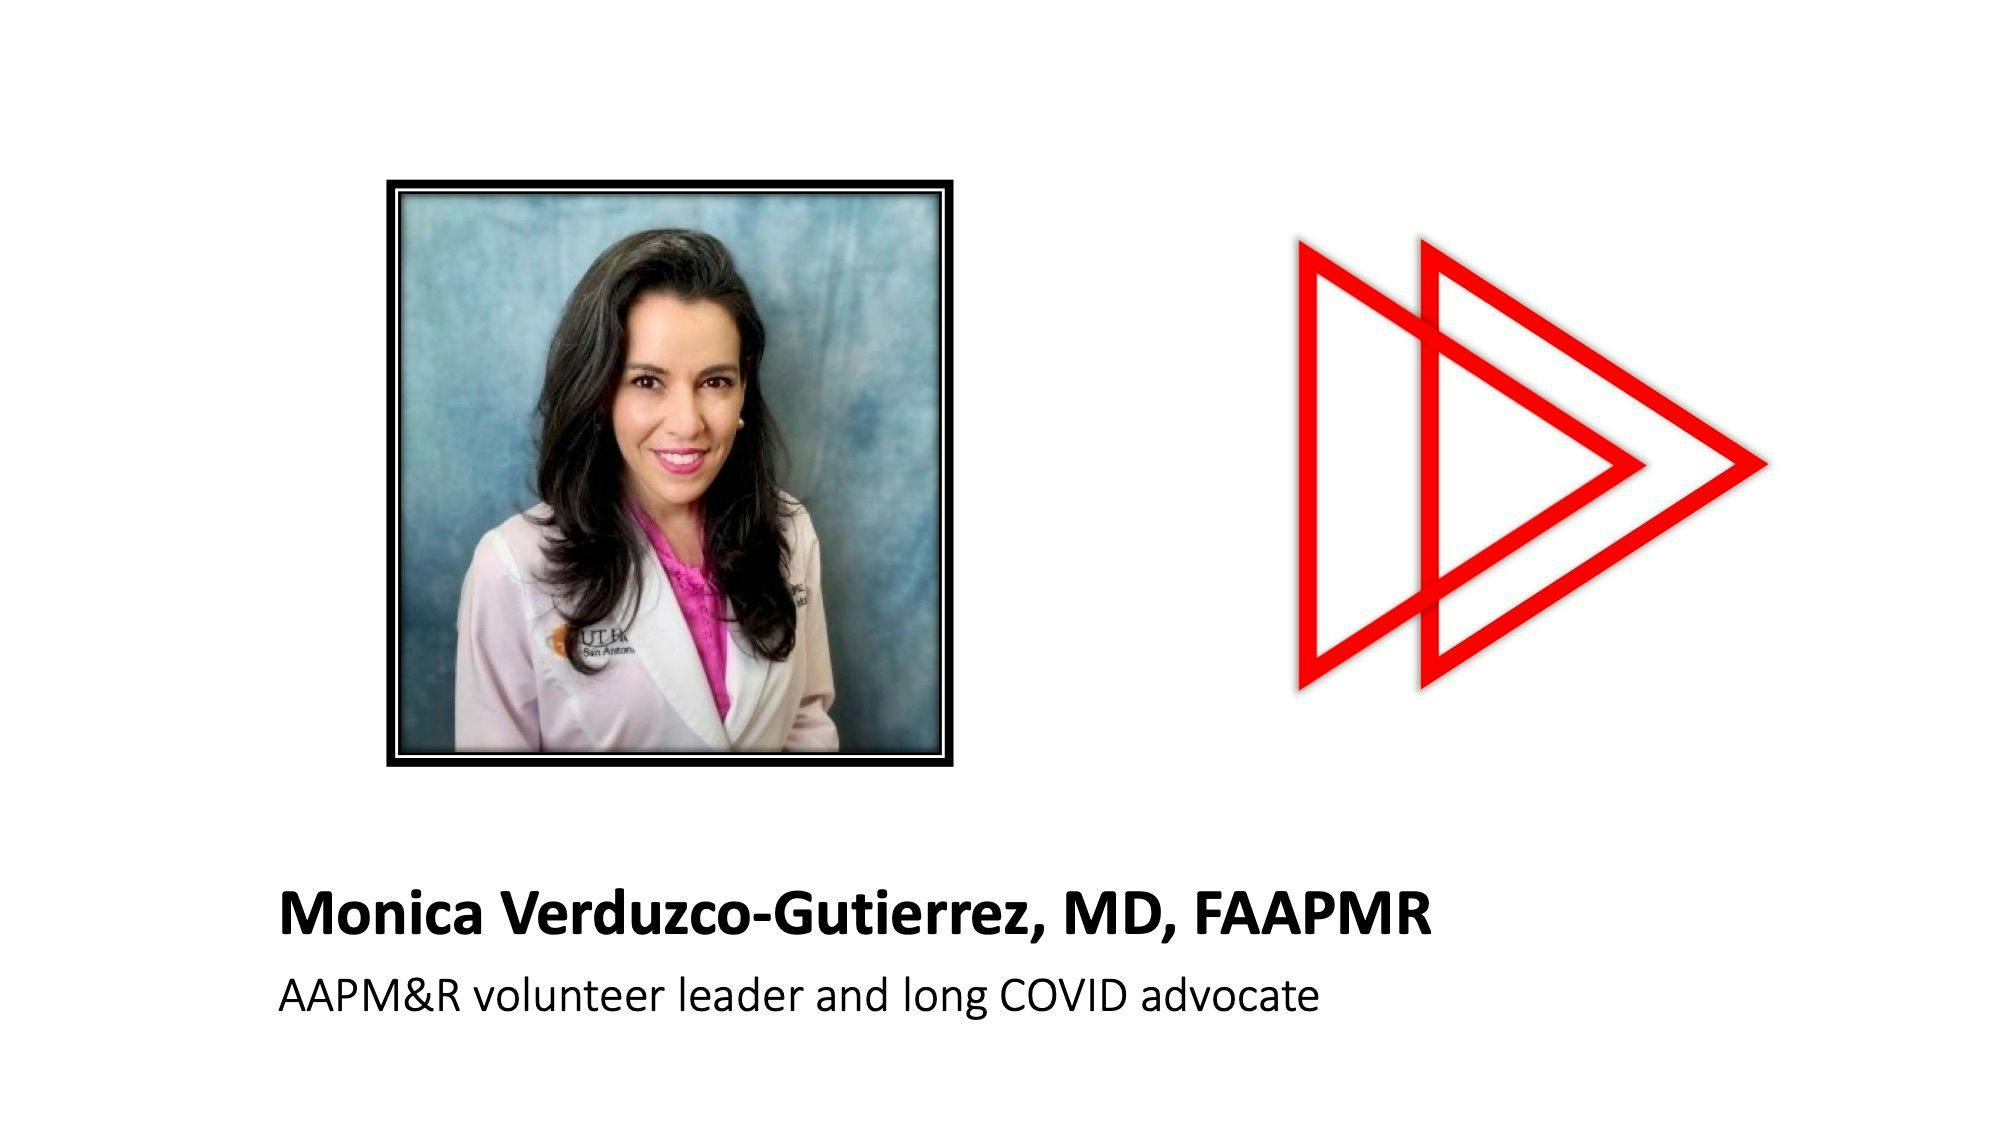 Monica Verduzco-Gutierez, MD, FAAPMR, gives expert advice